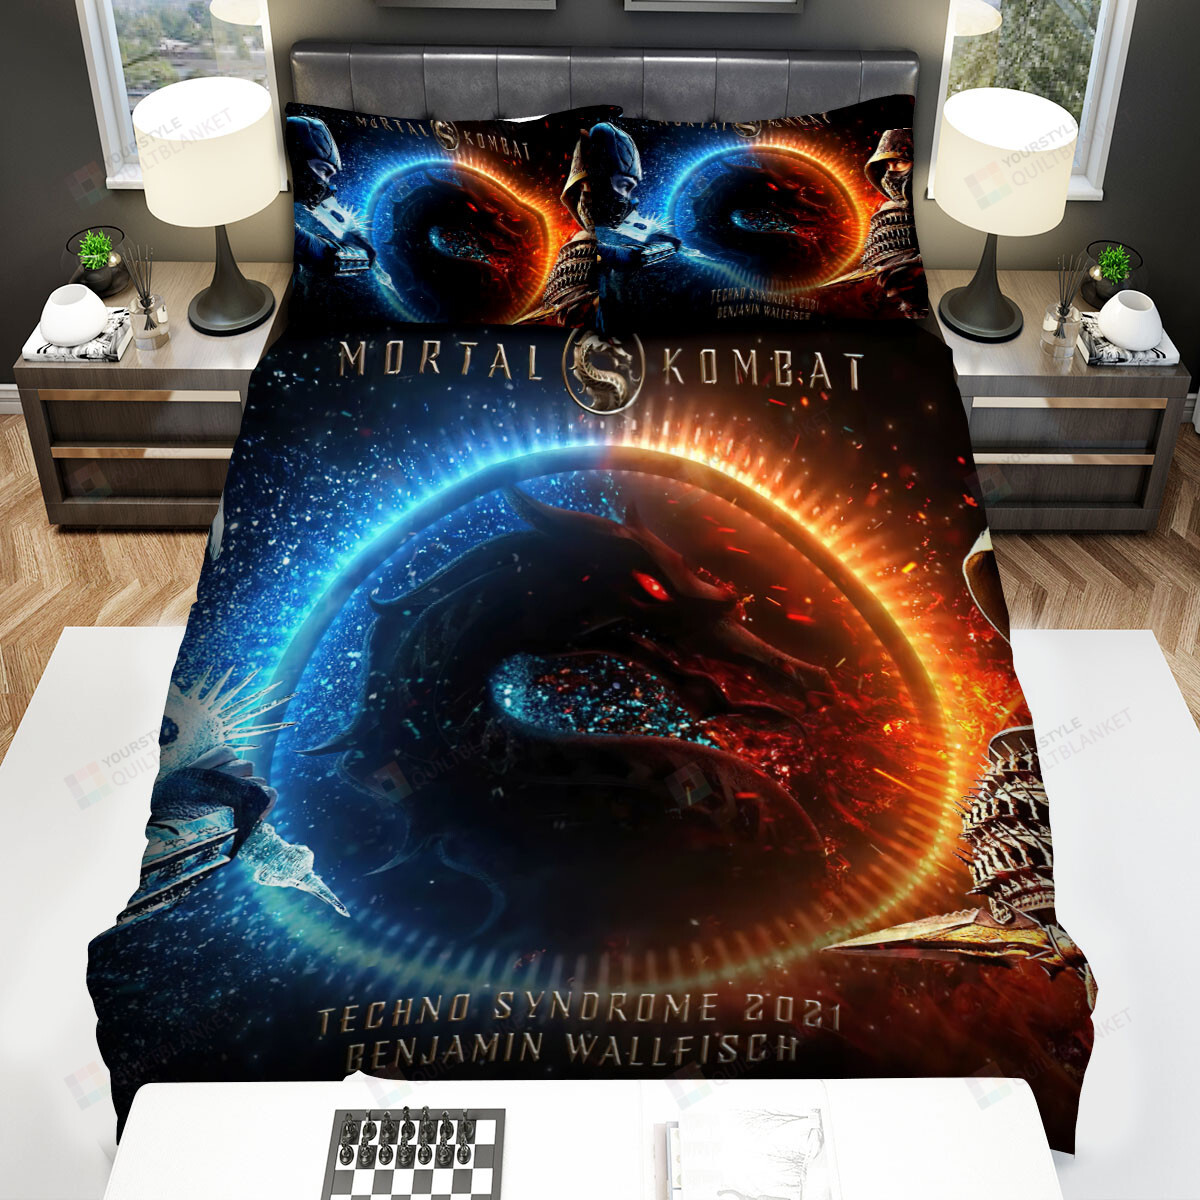 Mortal Kombat (2021) Movie Bed Sheets Spread Comforter Duvet Cover Bedding Sets